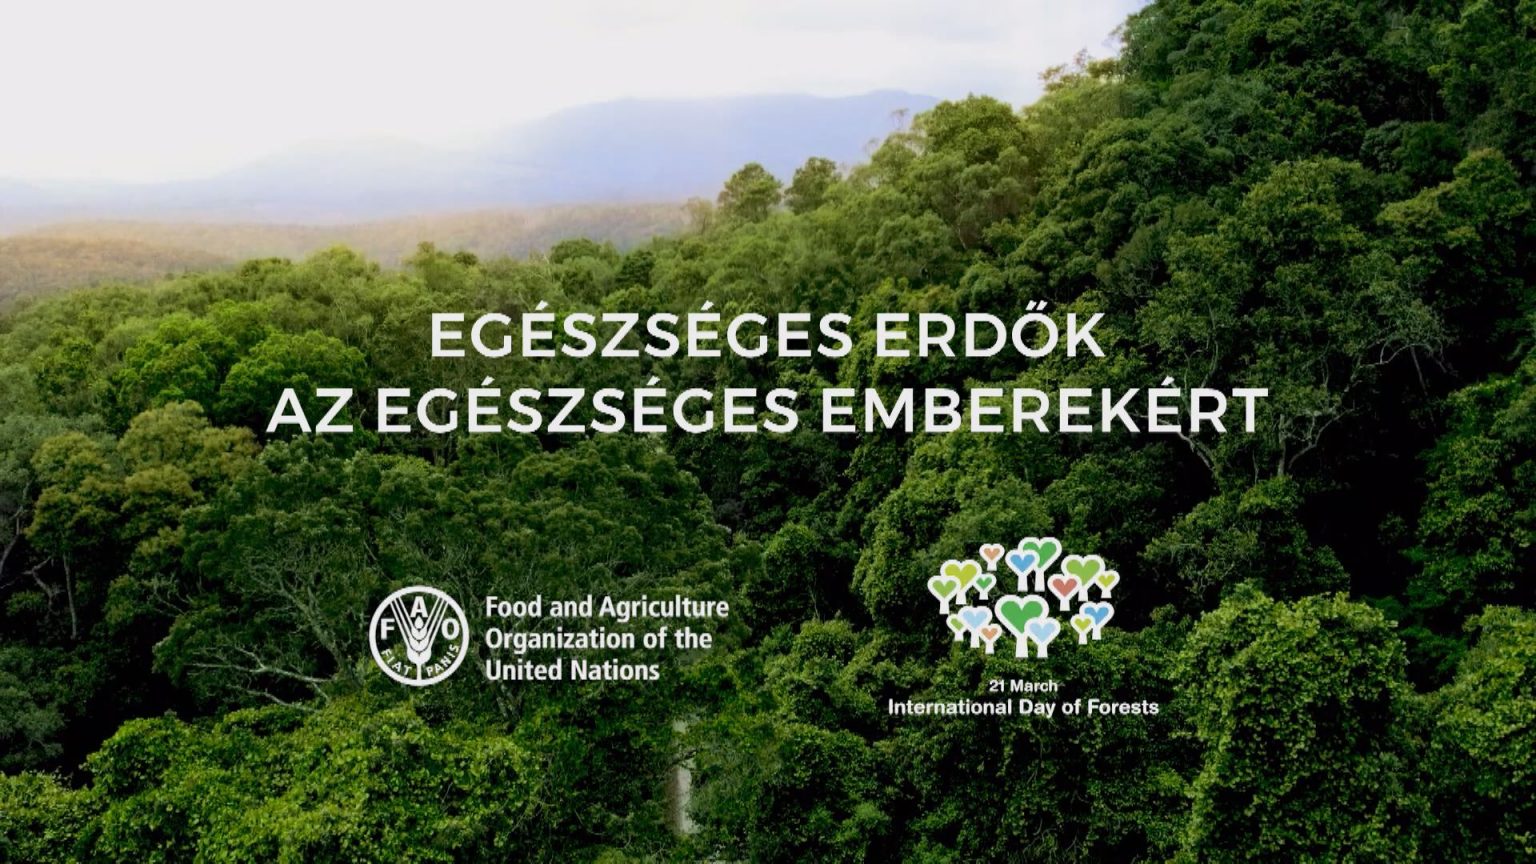 "Egészséges erdők az egészséges emberekért" - Erdők Nemzetközi Napja 2023 - a FAO kisfilm magyarul